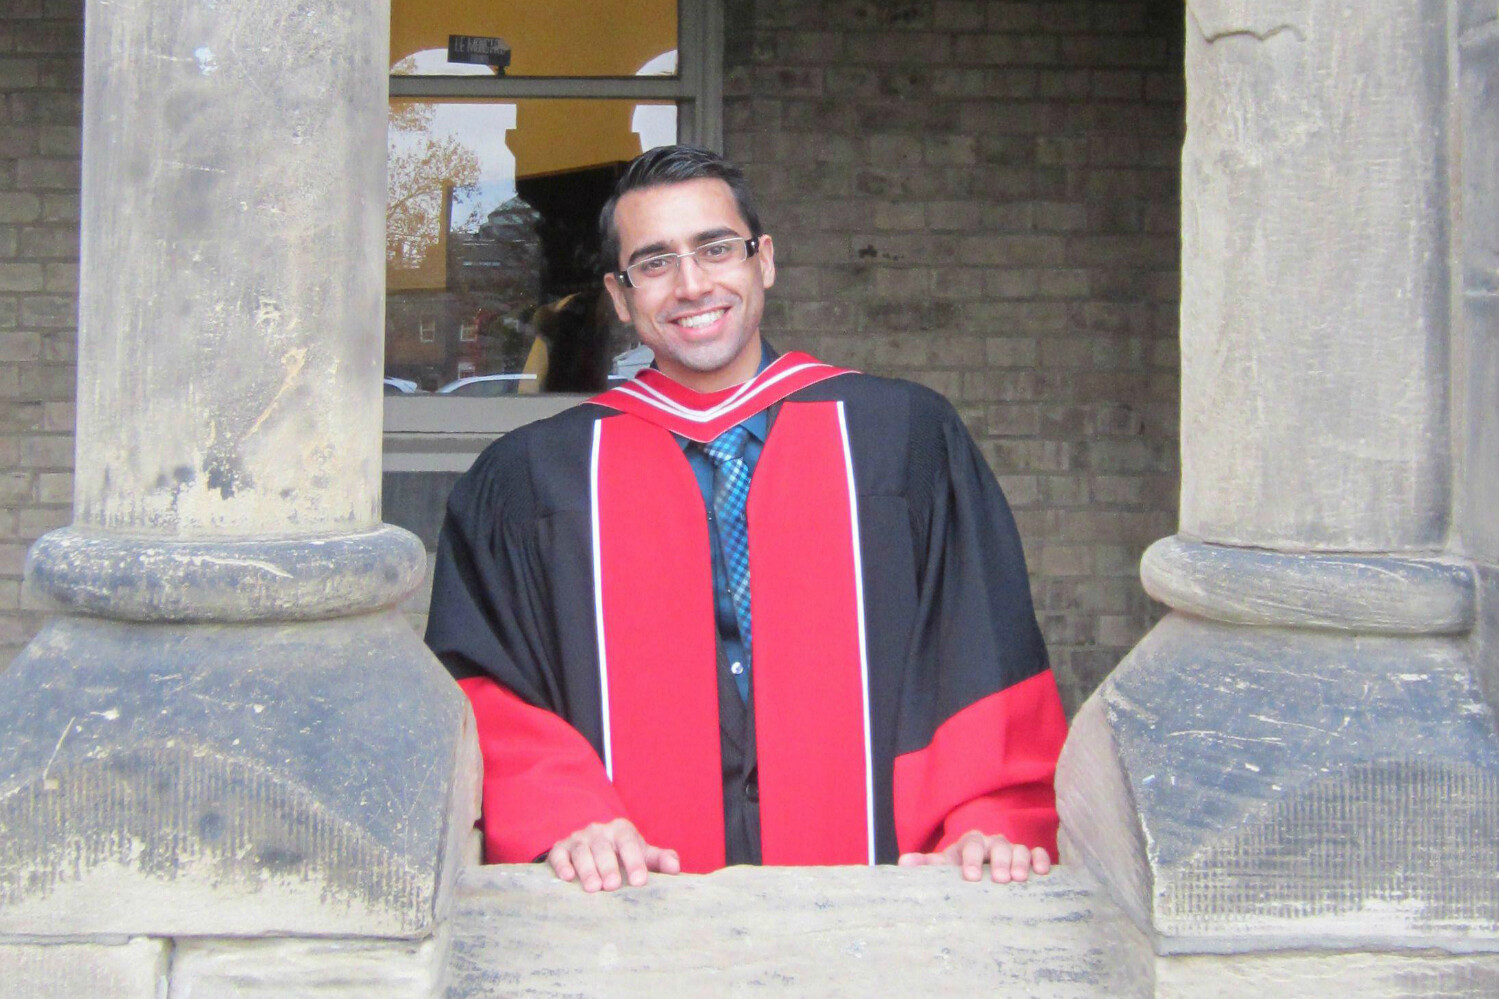 U of T Medicine Graduate Student Vijay Shahani